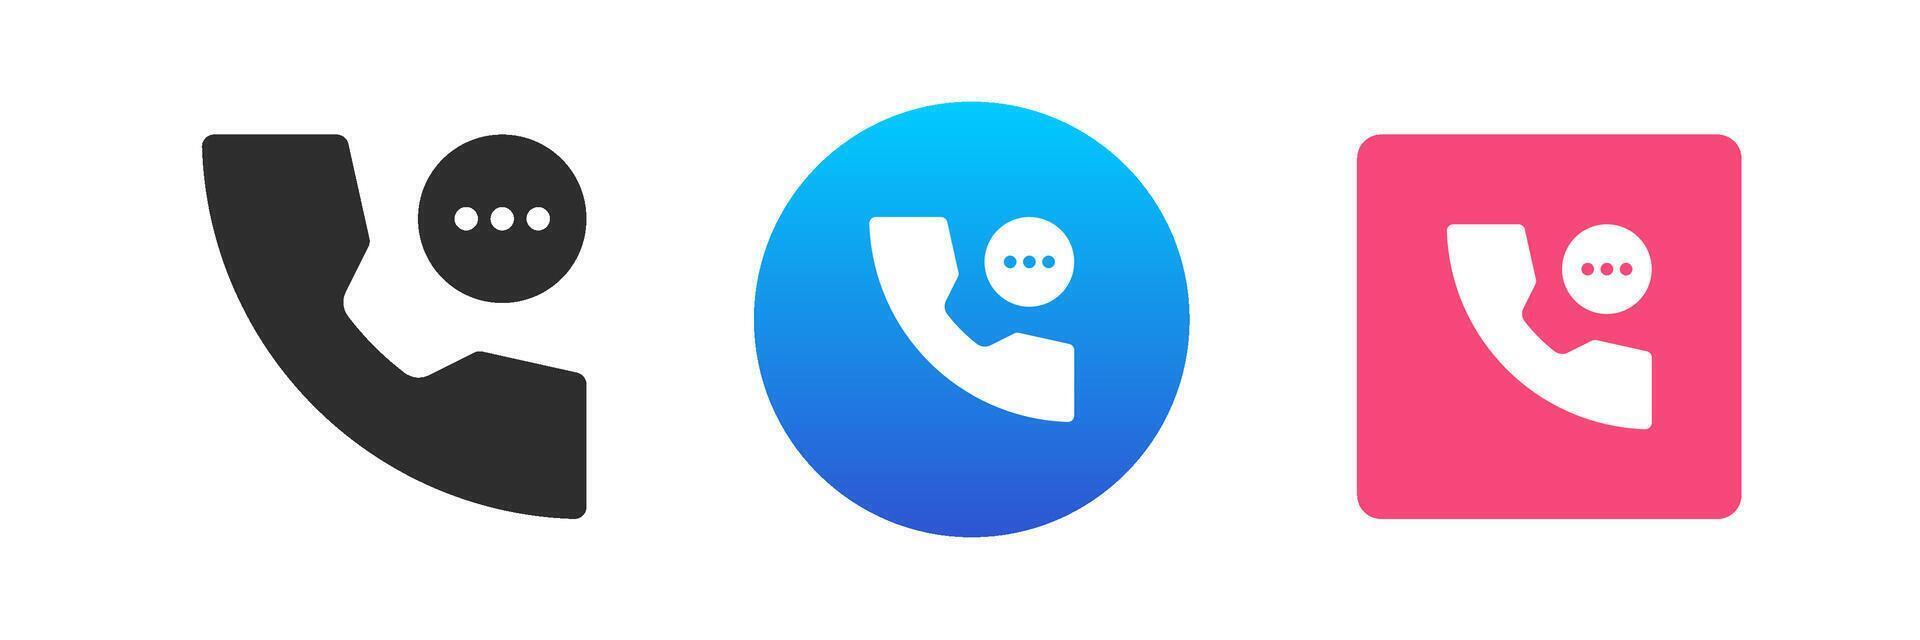 telefone ligar chatbot contato nos comentários cliente Apoio, suporte Telefone aparelho portátil ícone conjunto plano vetor